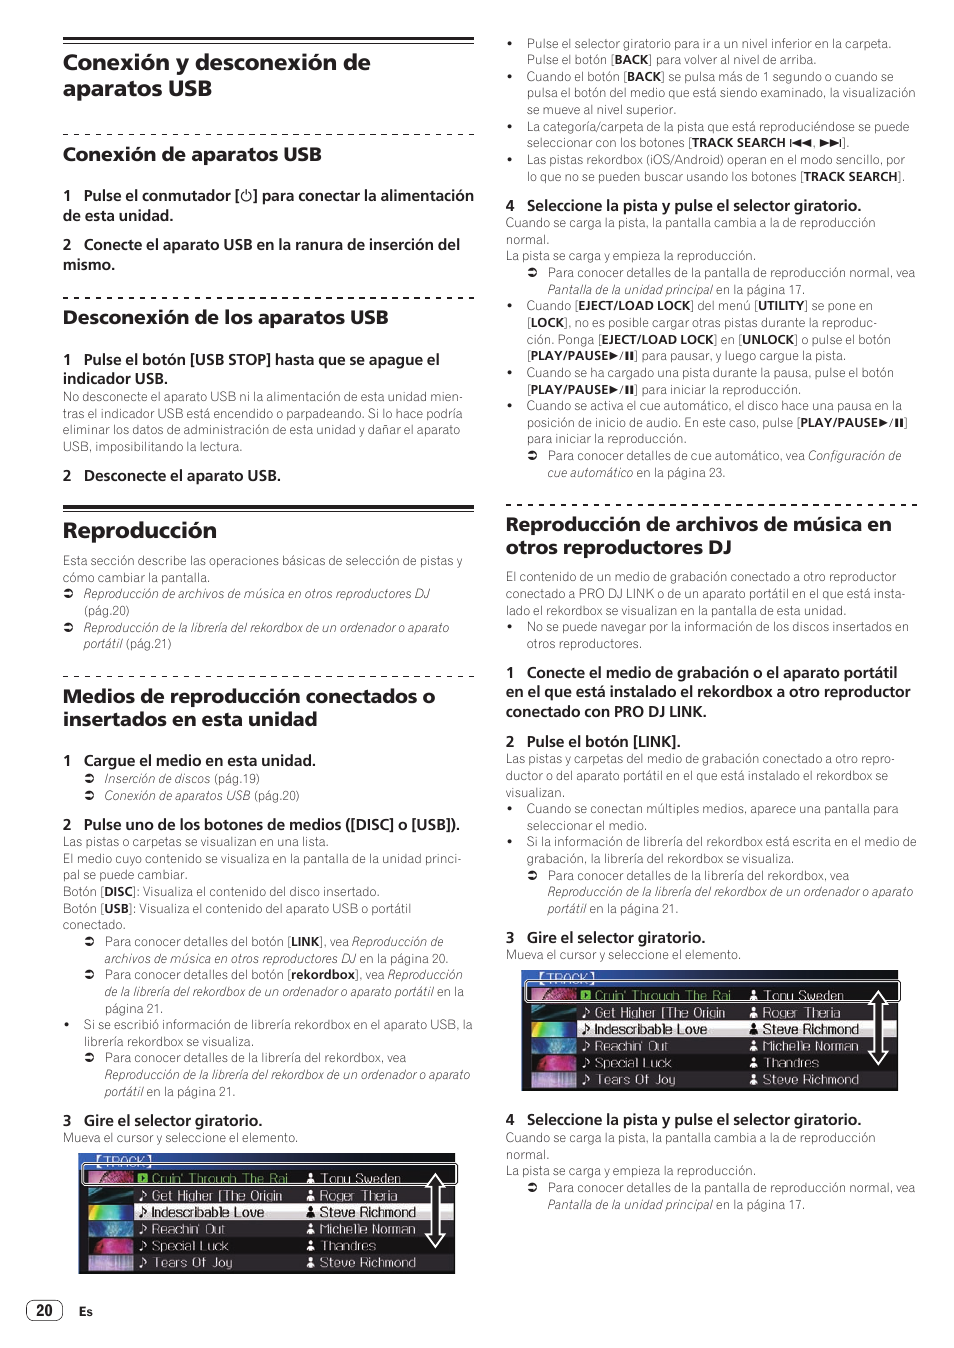 Conexión y desconexión de aparatos usb, Reproducción, Conexión de aparatos usb | Desconexión de los aparatos usb | Pioneer CDJ-900NXS Manual del usuario | Página 20 / 41